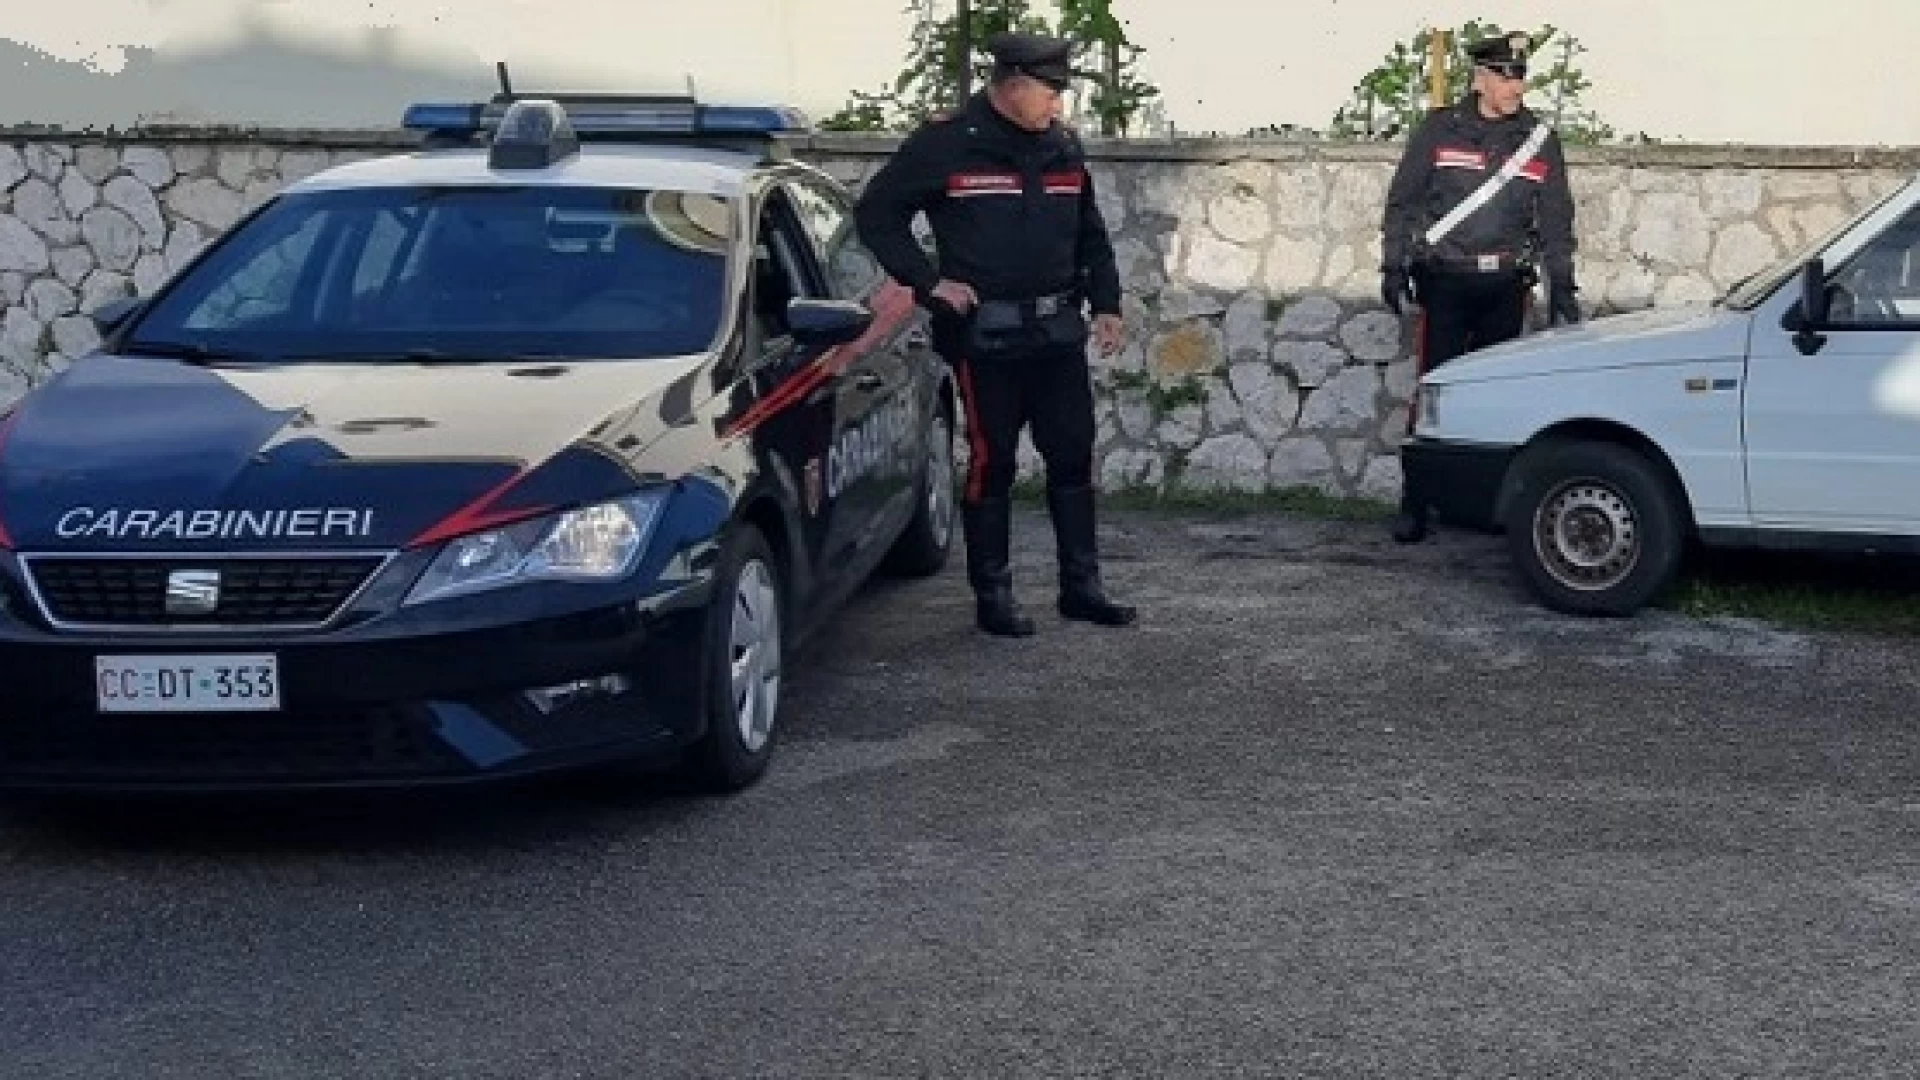 Venafro: I Carabinieri denunciano quattro persone per furto.